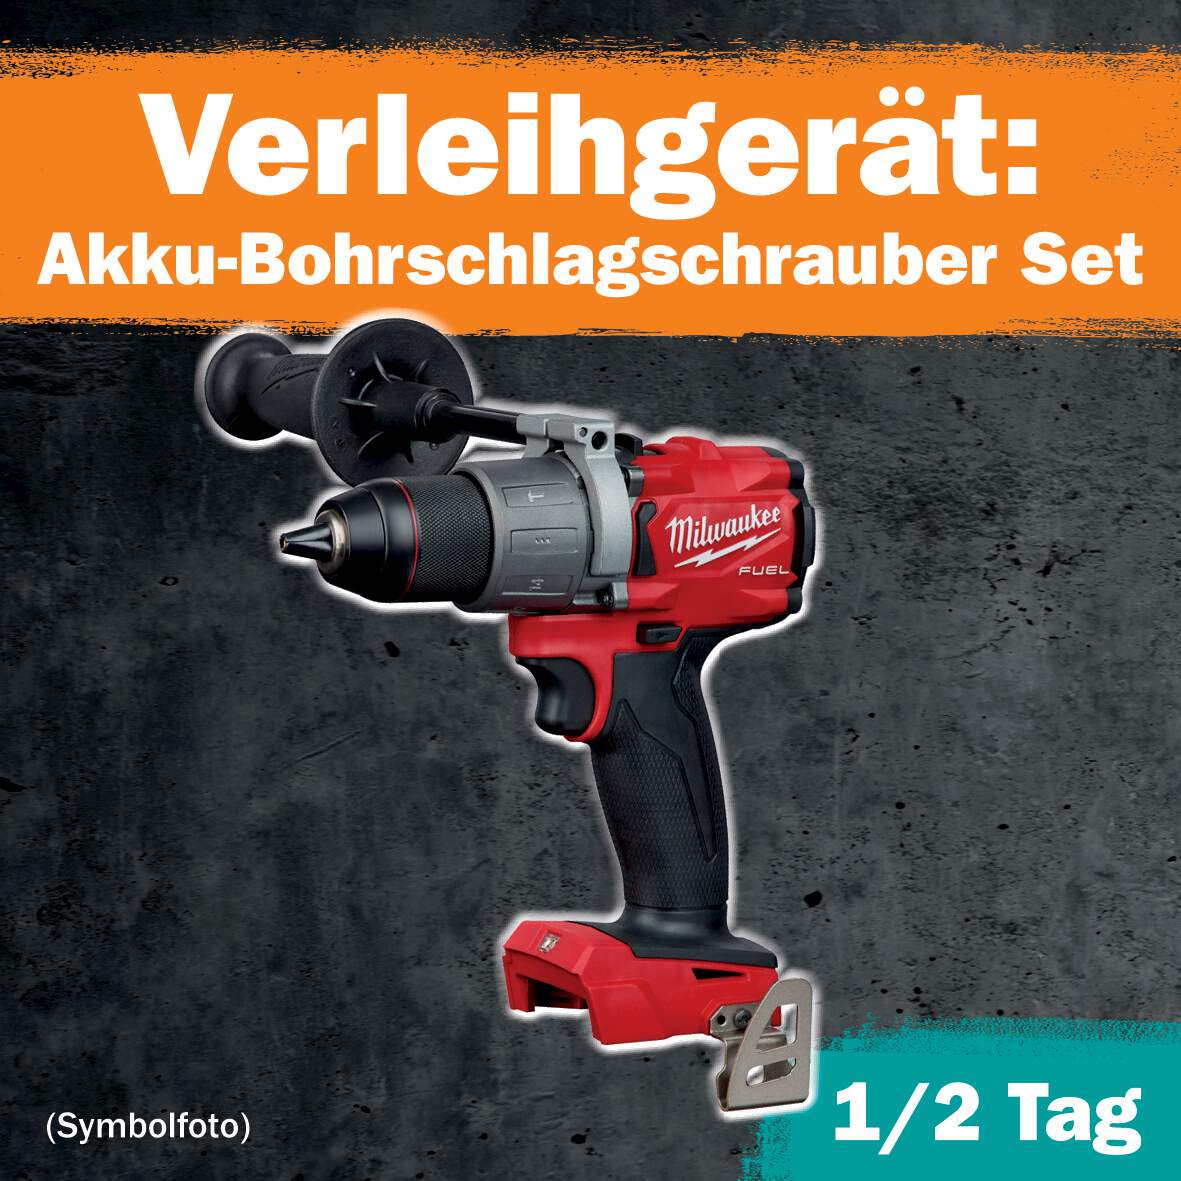 1288680 - Akku-Bohrschlagschrauber Set 1/2 Tag Leihdauer